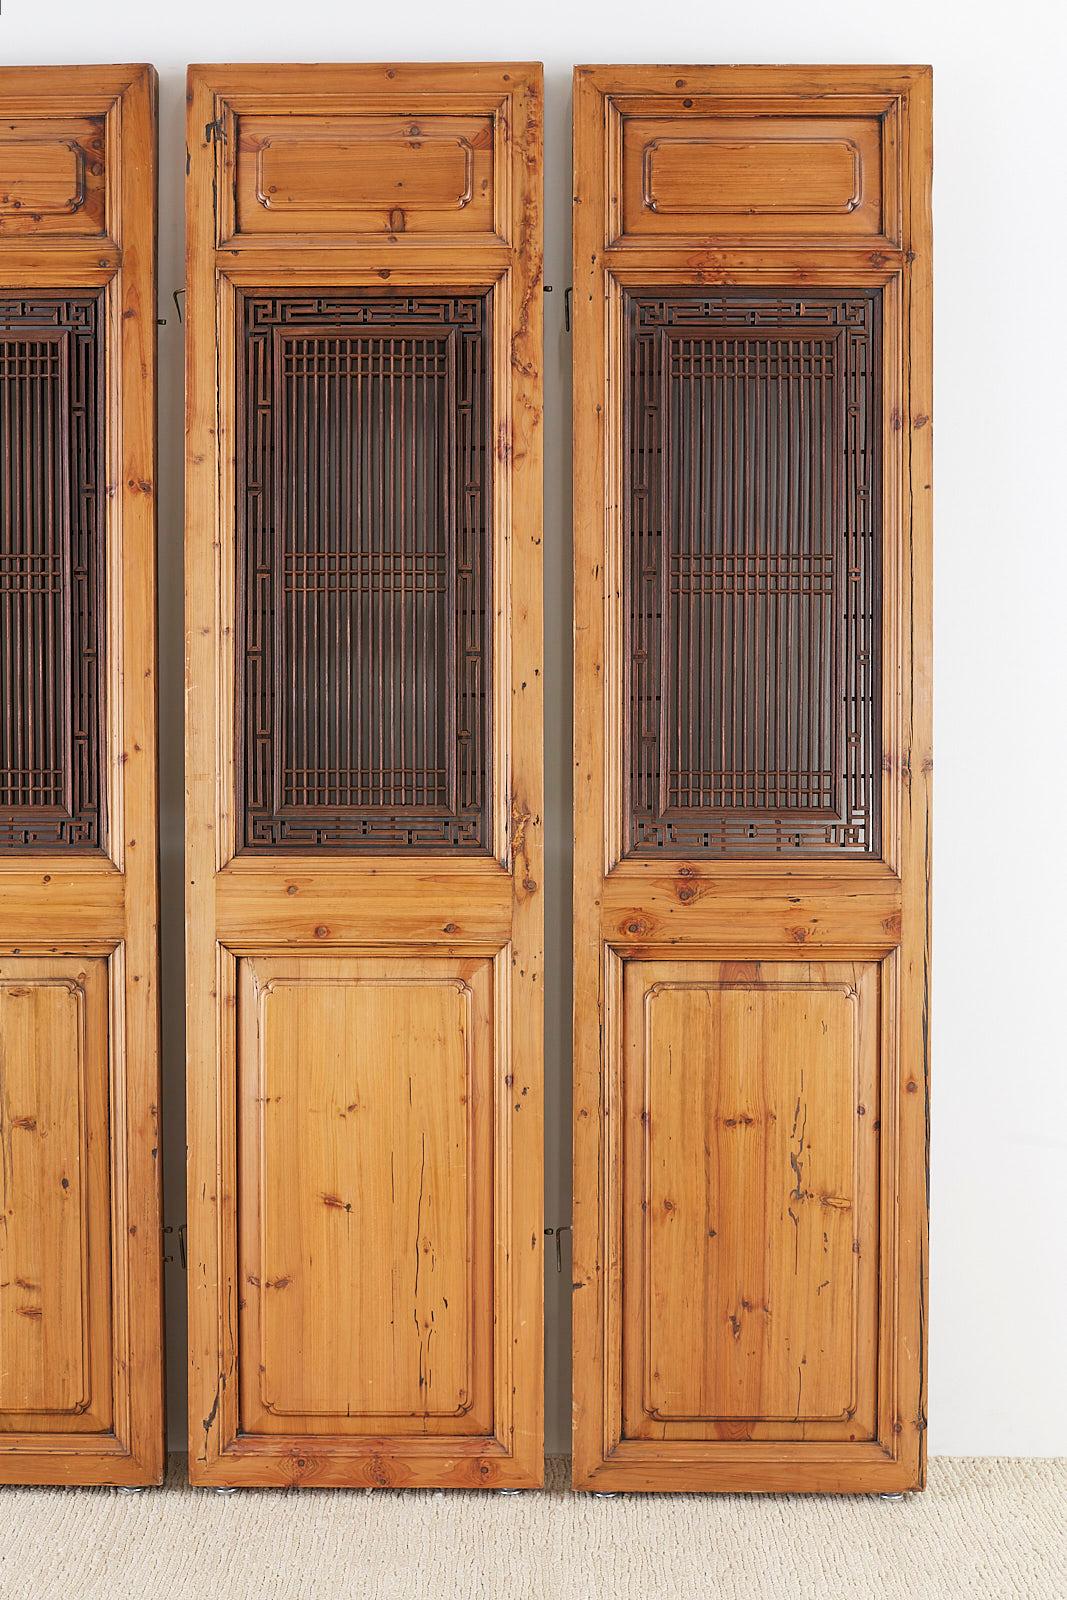 wood lattice door panels